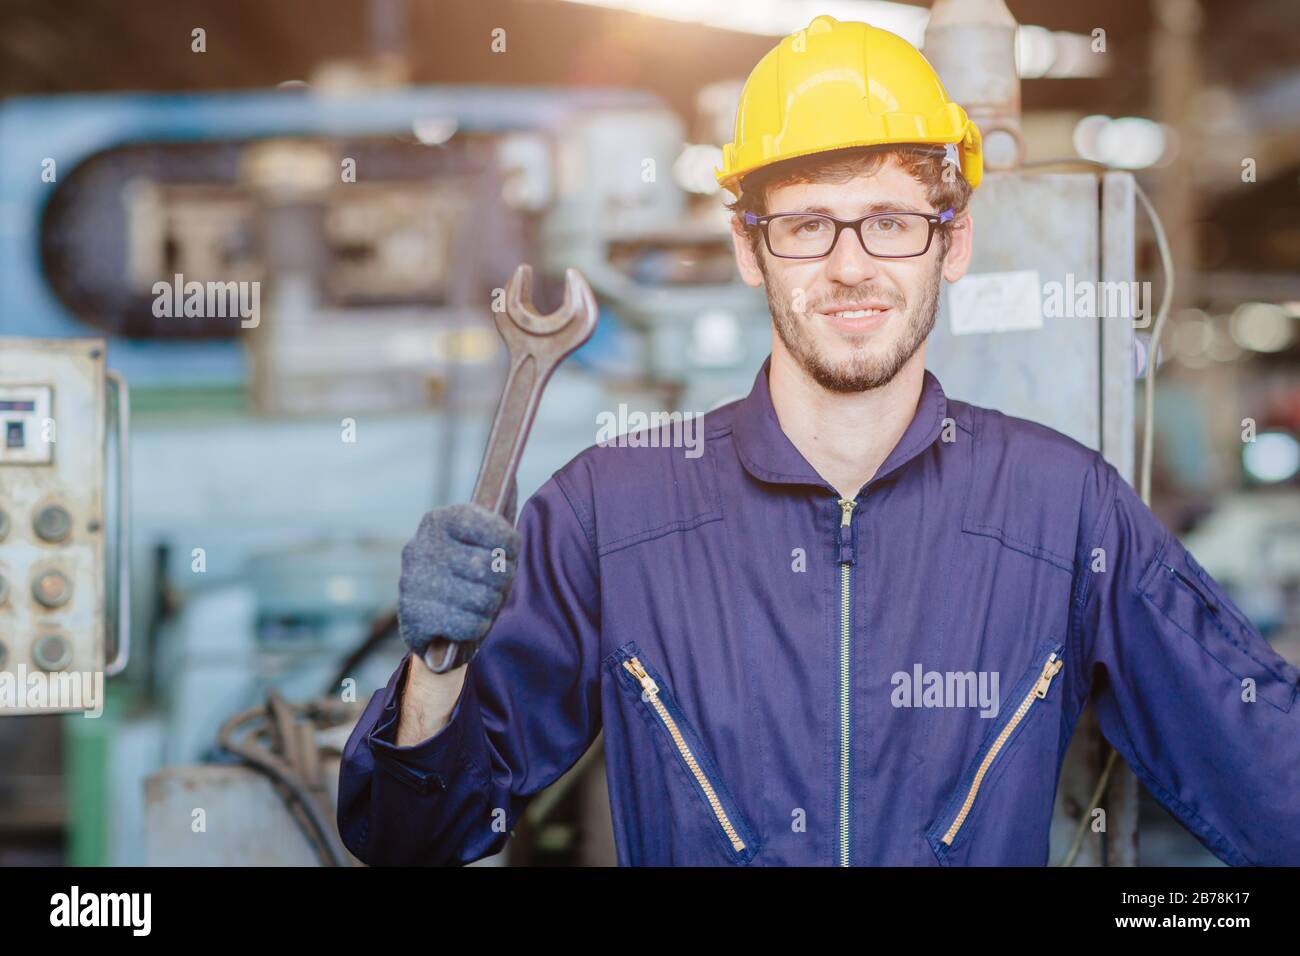 Glücklicher amerikanischer Teen Worker Handle Wrench.Engineer lächelt für Service Maintenance FIX Maschine in schwerer Industrie mit Safty Anzug und Helm. Stockfoto